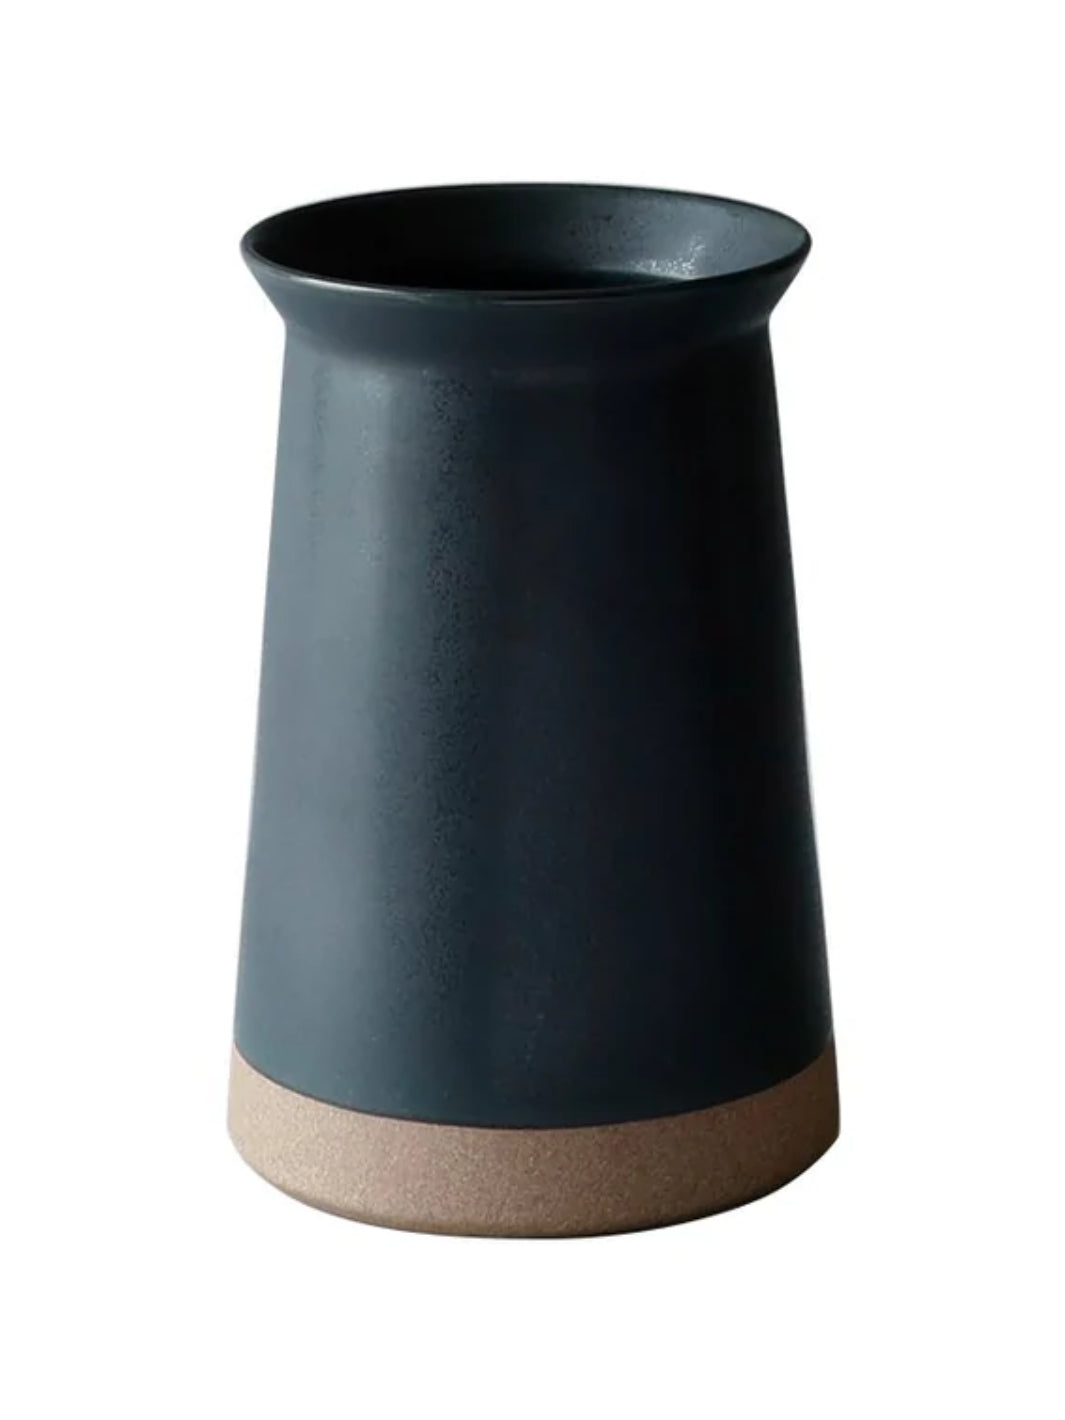 KINTO Ceramic Lab Utensil Holder (75mm/3in) – Someware